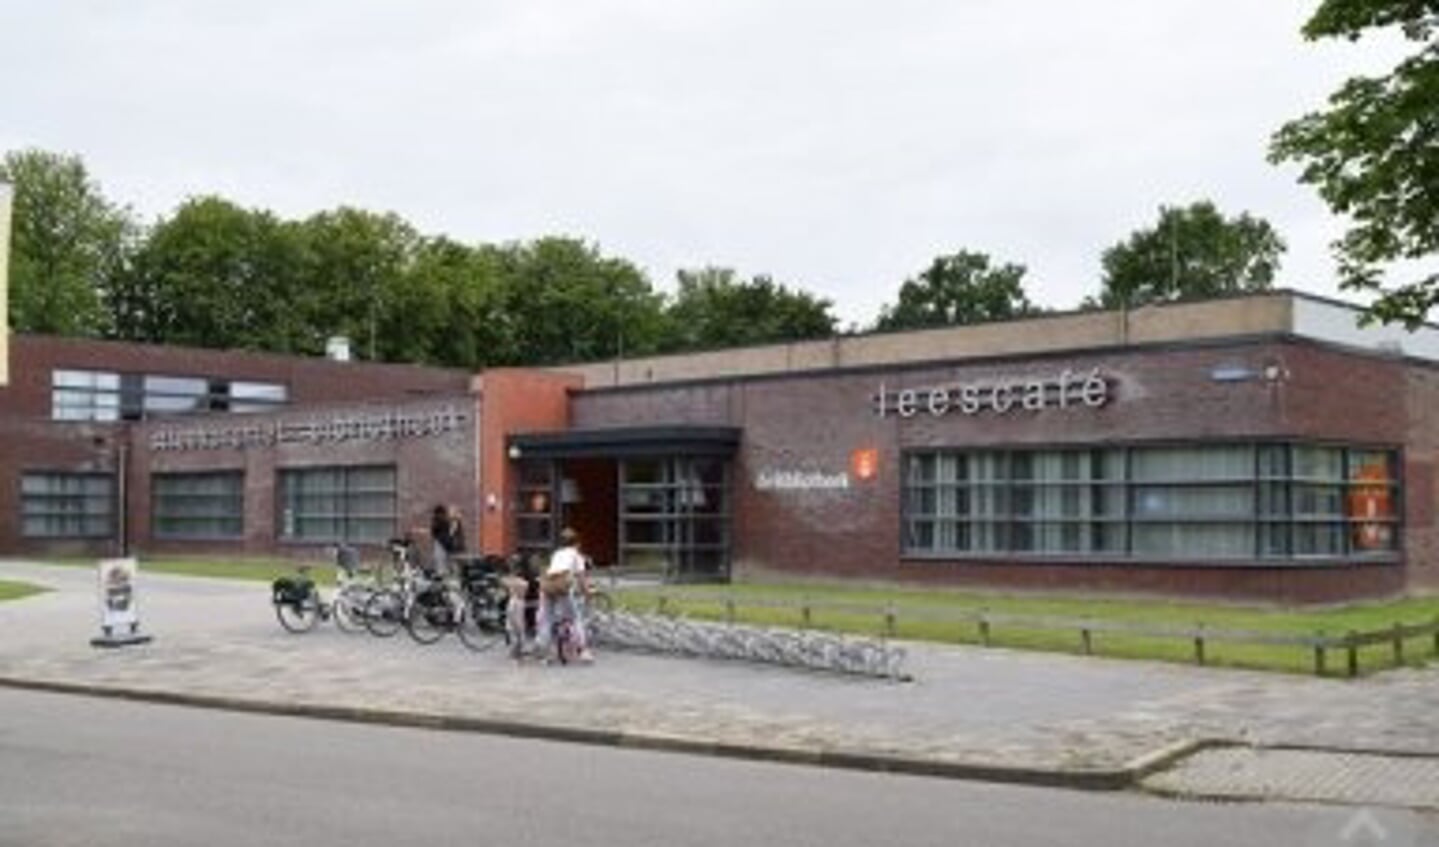 Bibliotheek Dokkum biedt ruimte aan de Studiekring Nijsgjirrich Dockum, op maandagmiddag om de veertien dagen, vanaf 8 augustus.